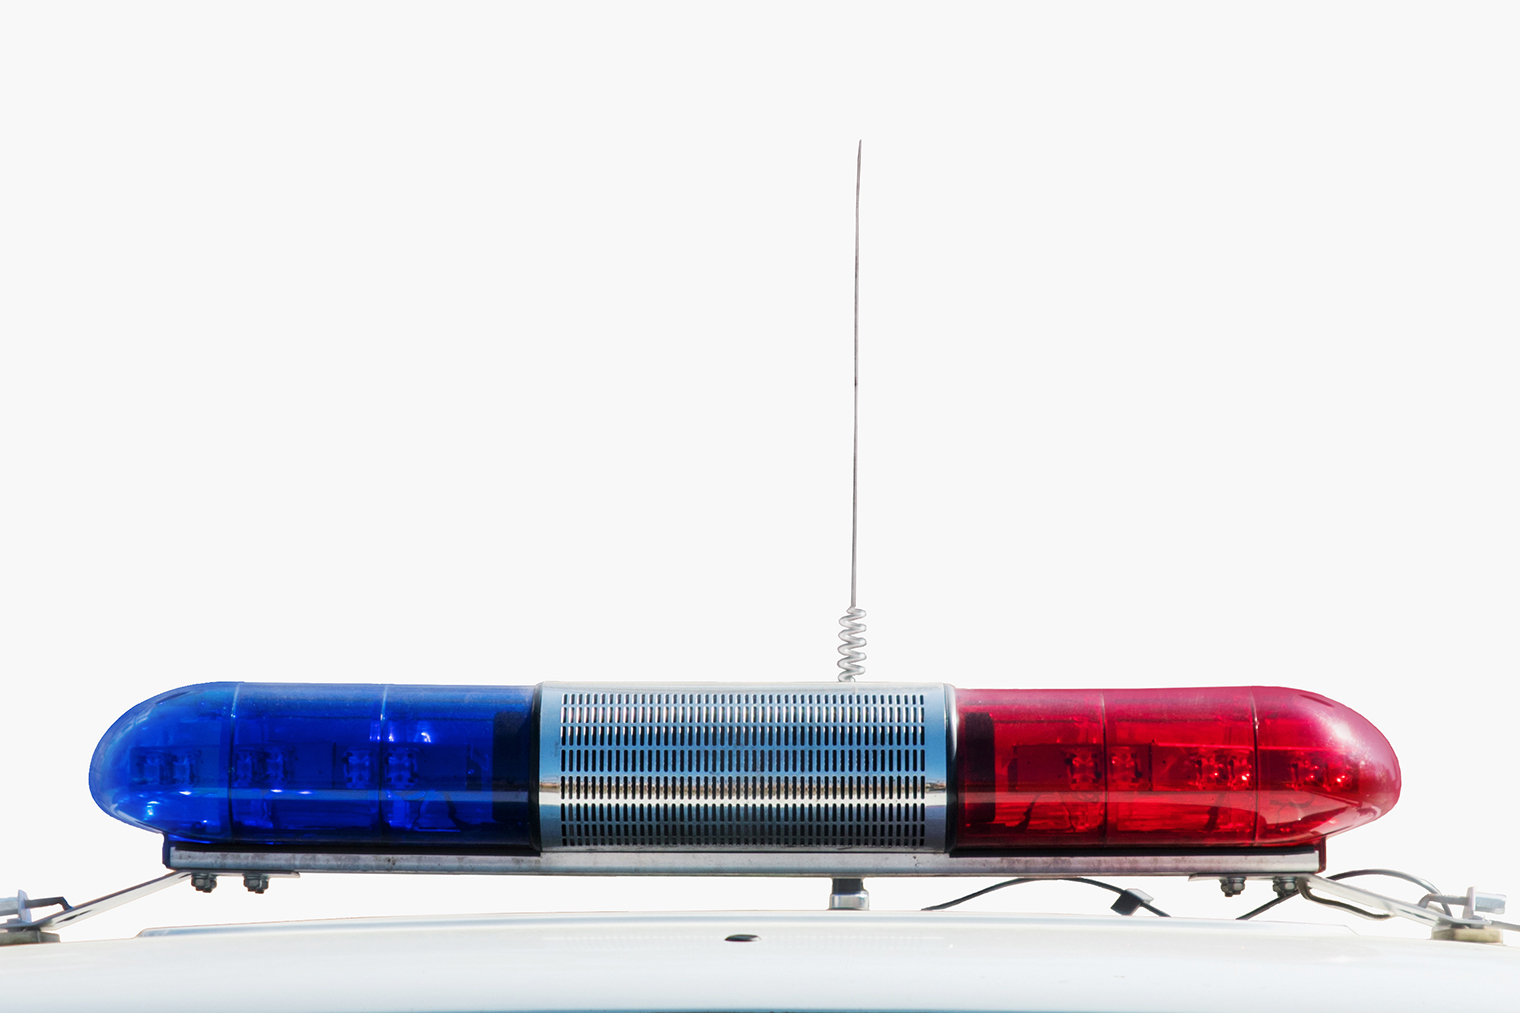 Сирену, или специальный звуковой сигнал, устанавливают вместе с проблесковыми маячками синего и красного цвета на автомобилях специальных служб — полиции, скорой помощи, пожарных. Источник: Artem Zarubin / Shutterstock / FOTODOM